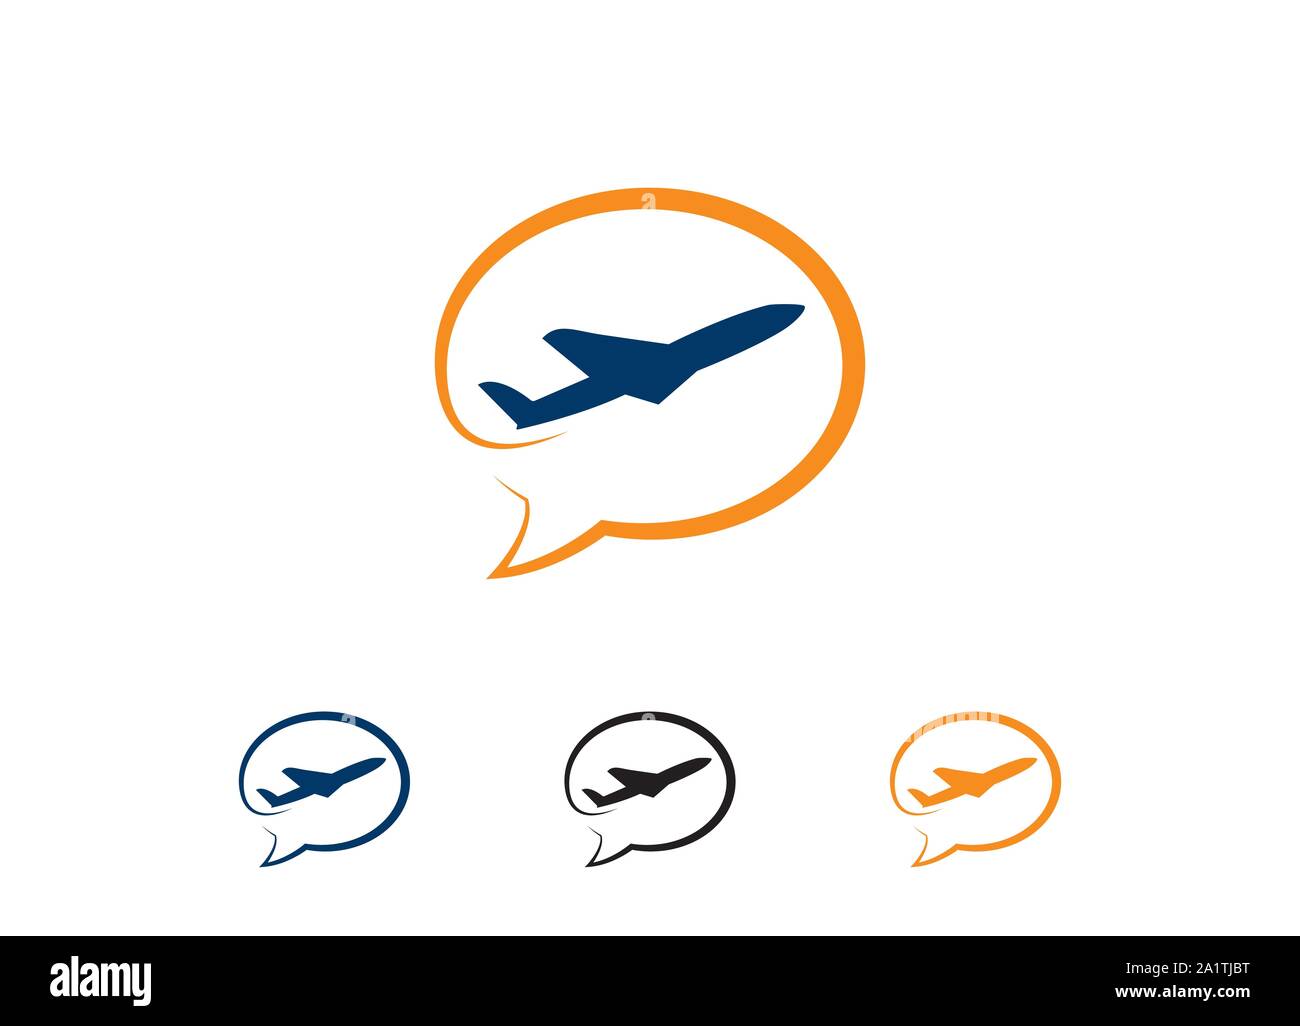 Sommer reisen logo Symbol vektor Vorlage, Vector Logo Design Templates für Airlines, Flugtickets, Reisebüros - Flugzeuge und Embleme, Stock Vektor